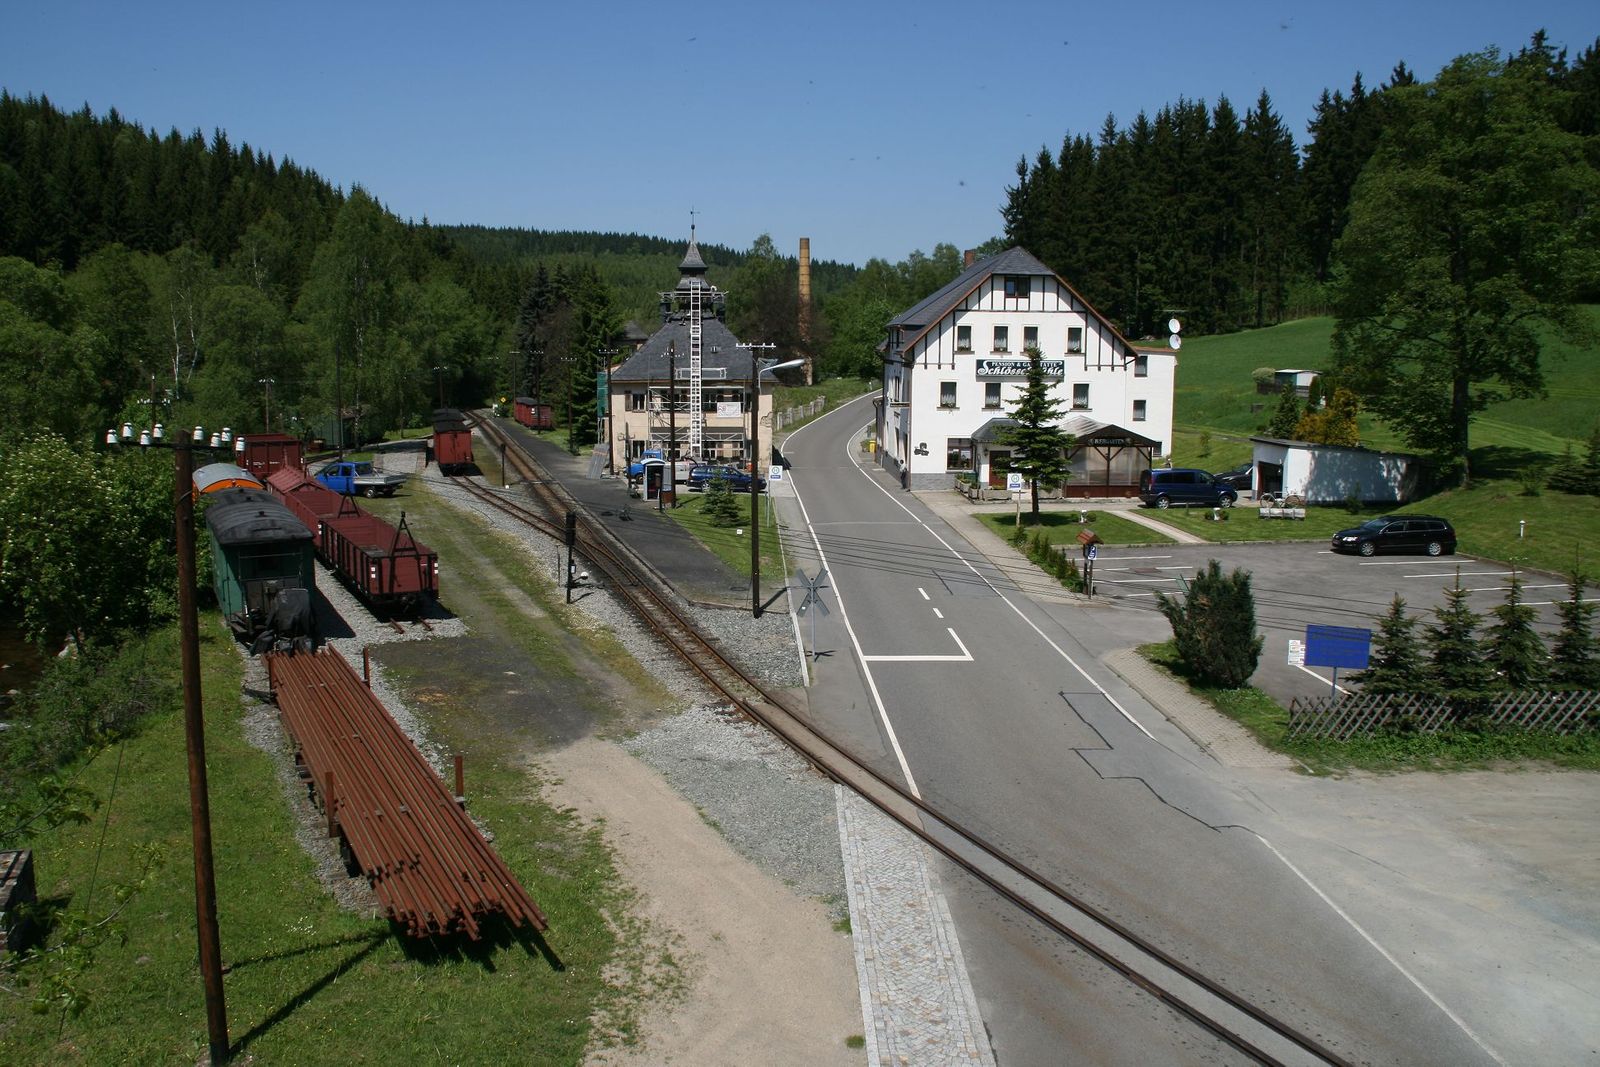 Blick auf die Gleise des Bahnhofes Schlössel vom Lichtmast am Bahnübergang aus.